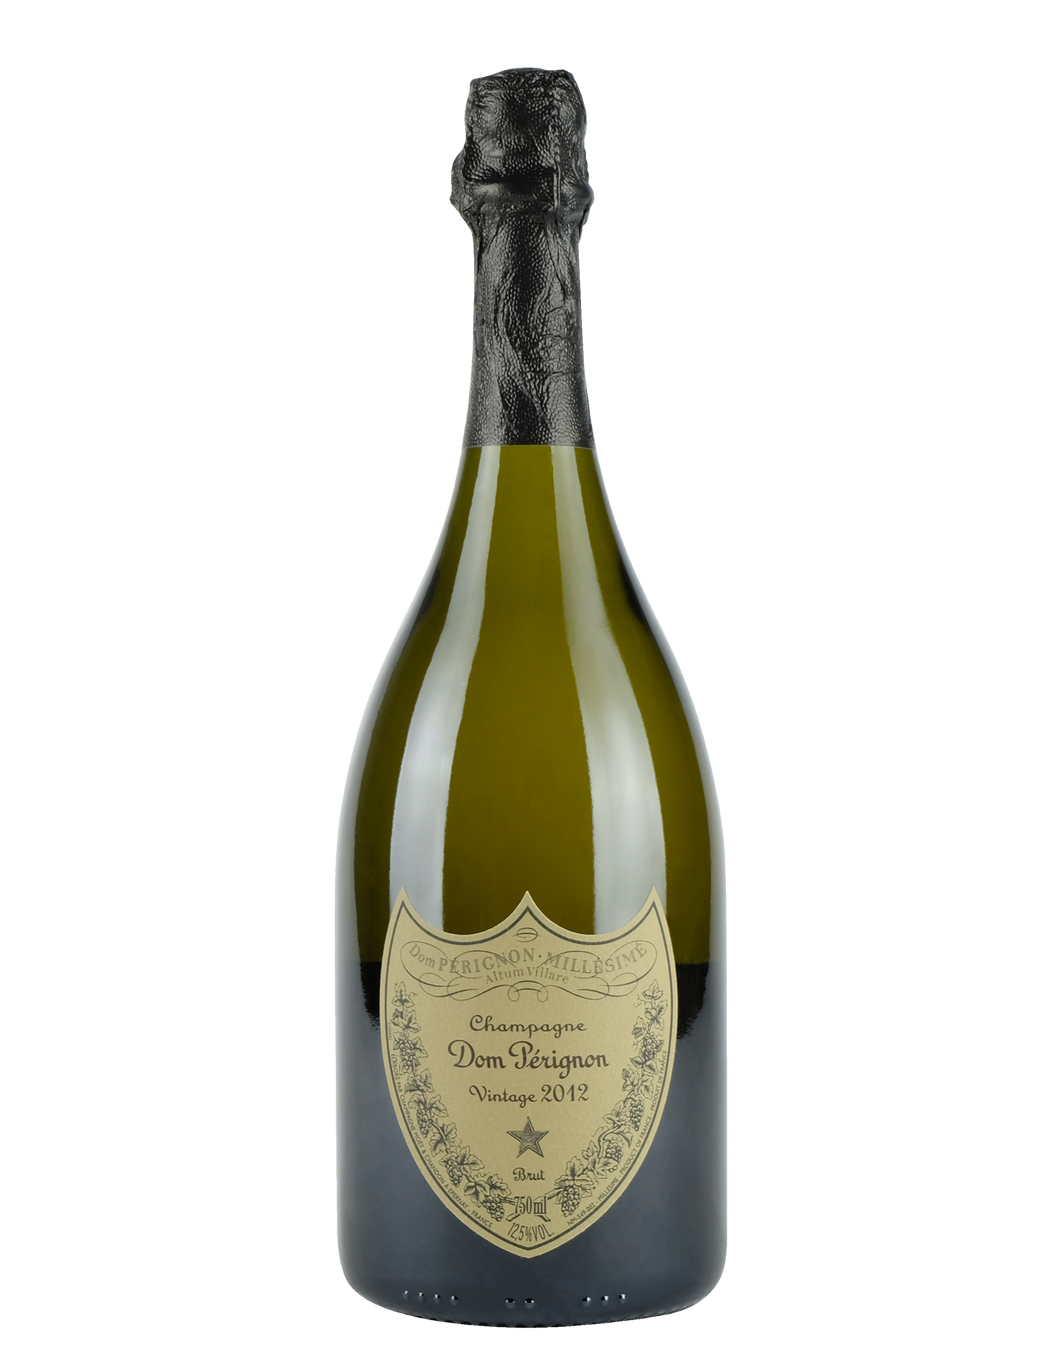 Champagne Brut Vintage 2013